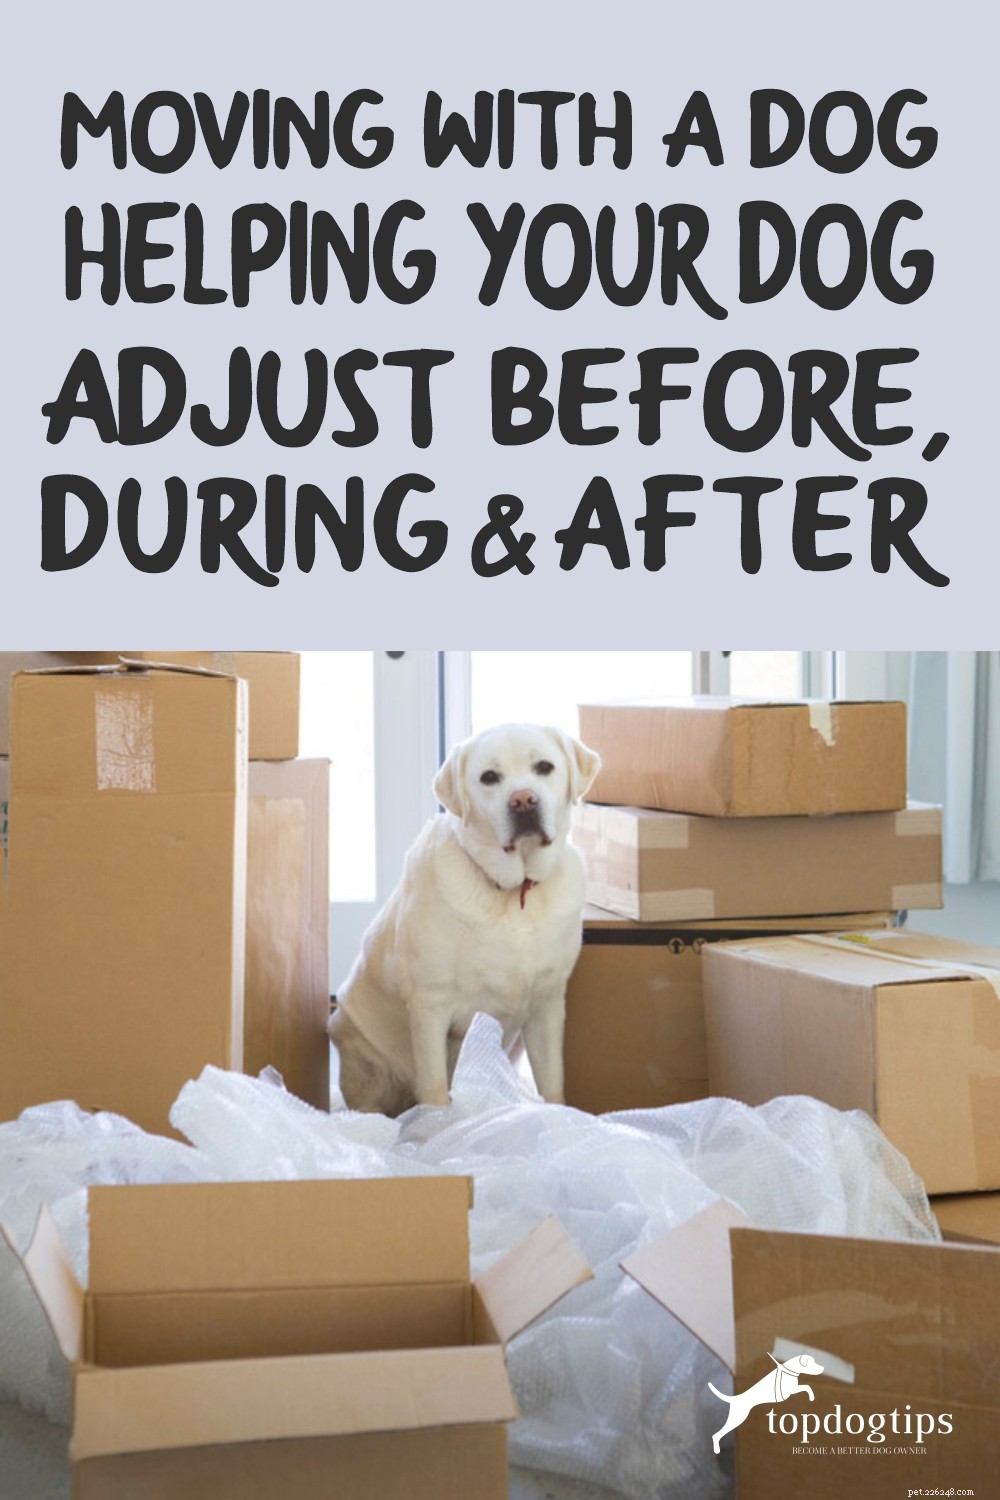 Verhuizen met een hond [Uw hond helpen zich aan te passen voor, tijdens en na]